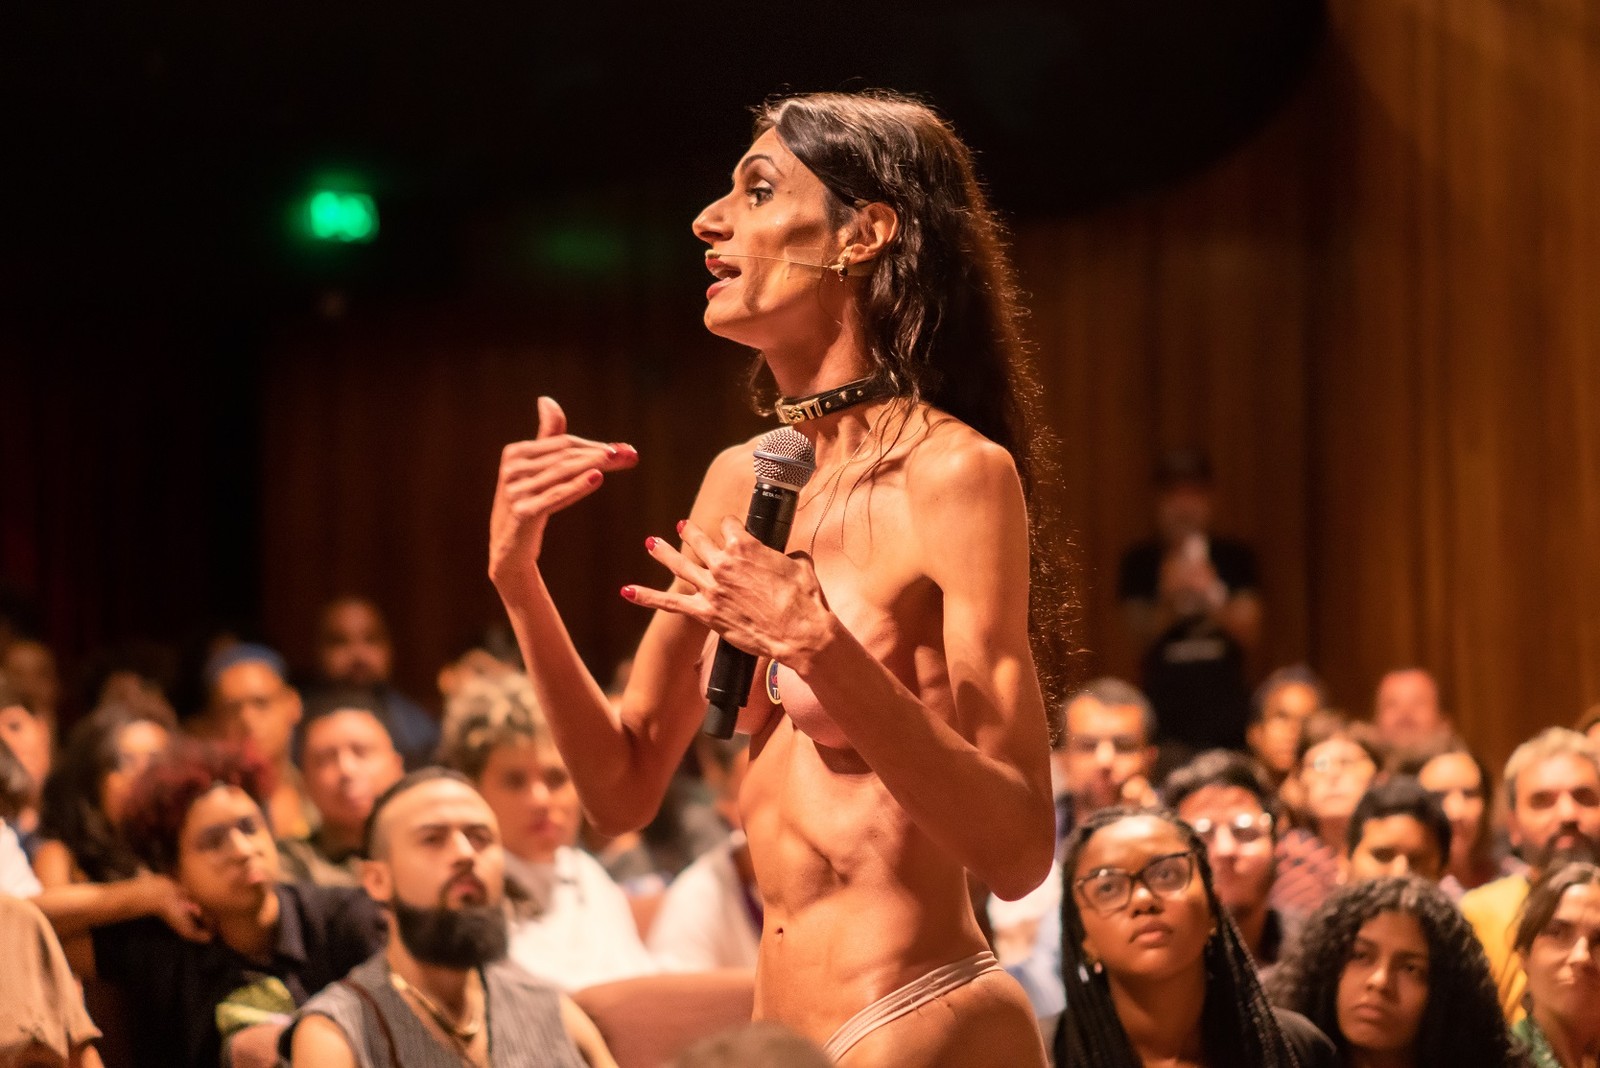 Renata Carvalho na peça "Manifesto transpofágico" — Foto: divulgação